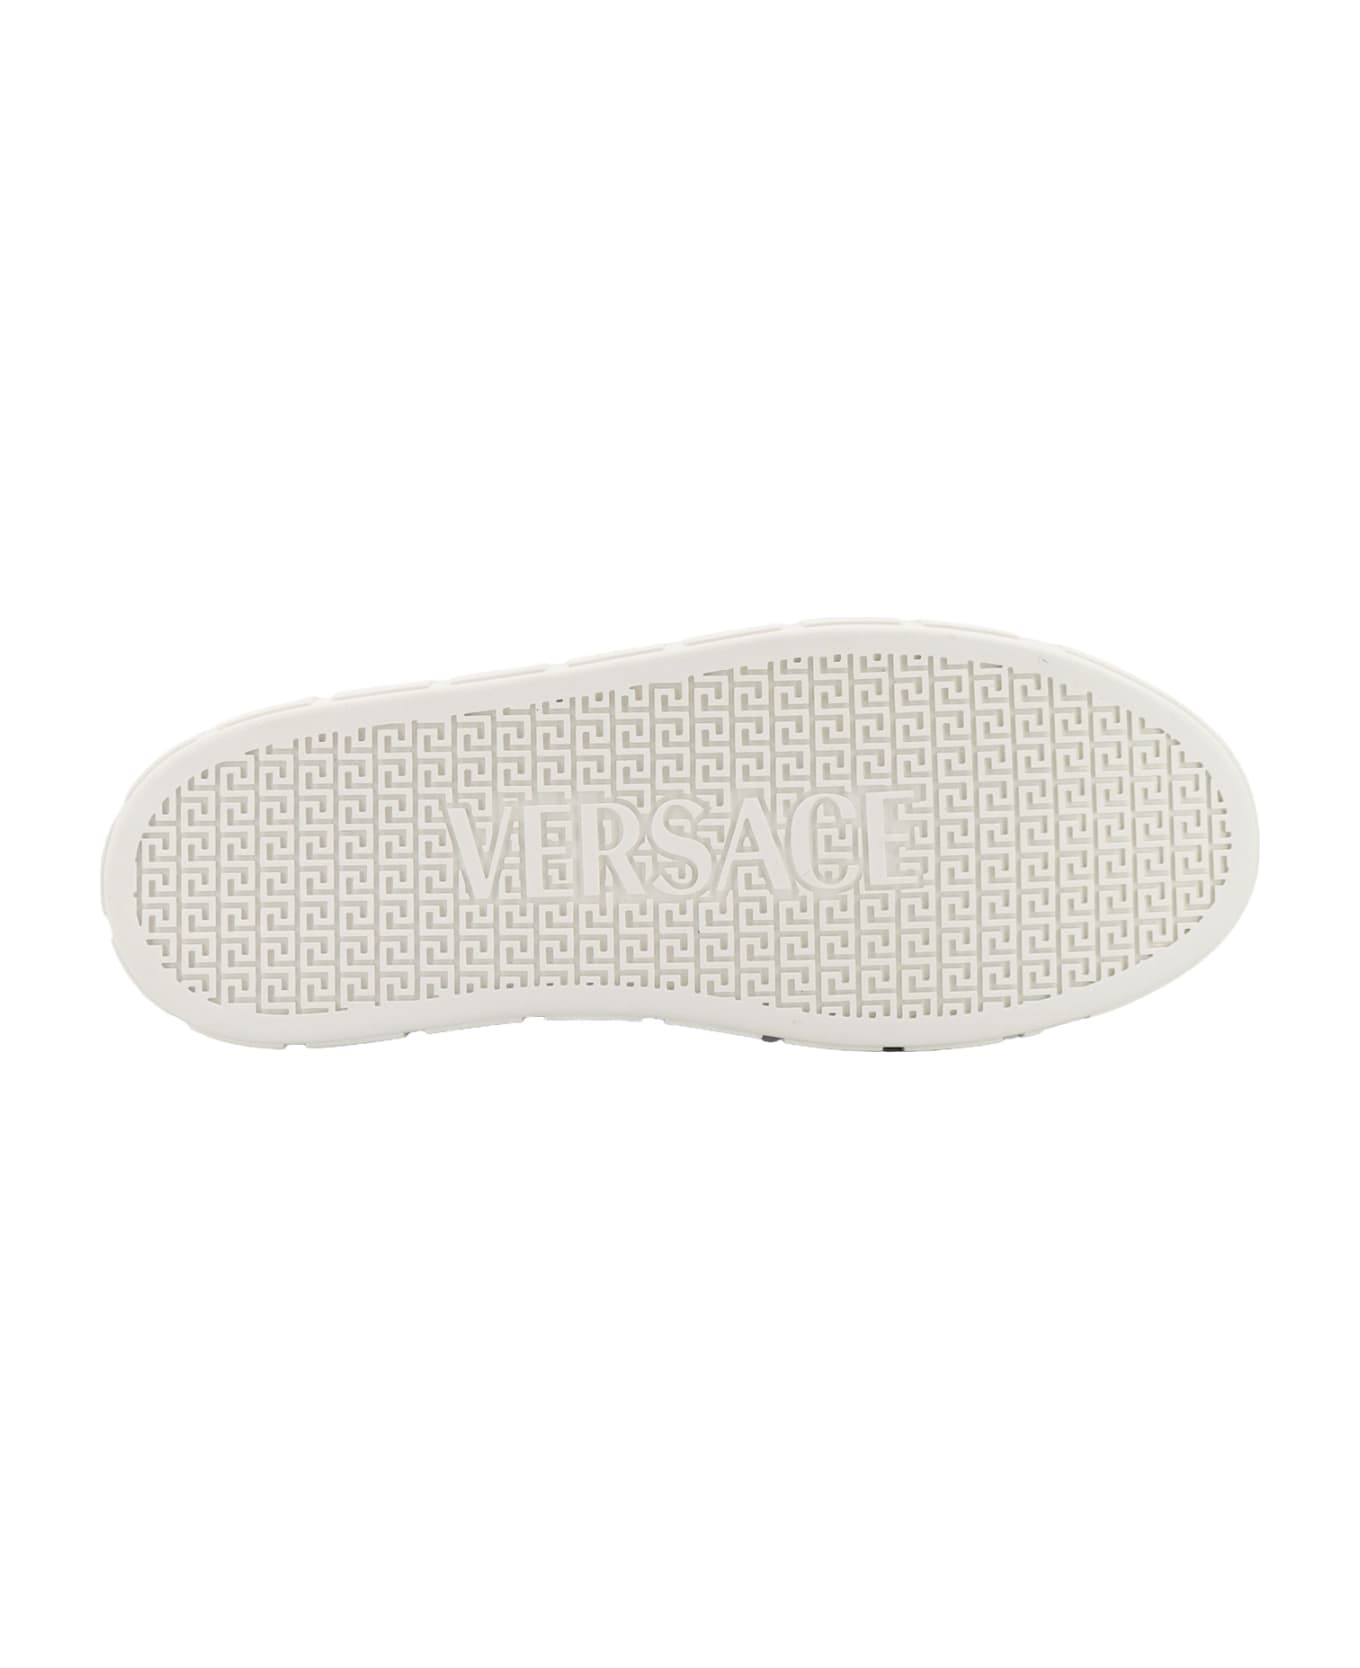 Versace Greca Sneakers - Nero スニーカー